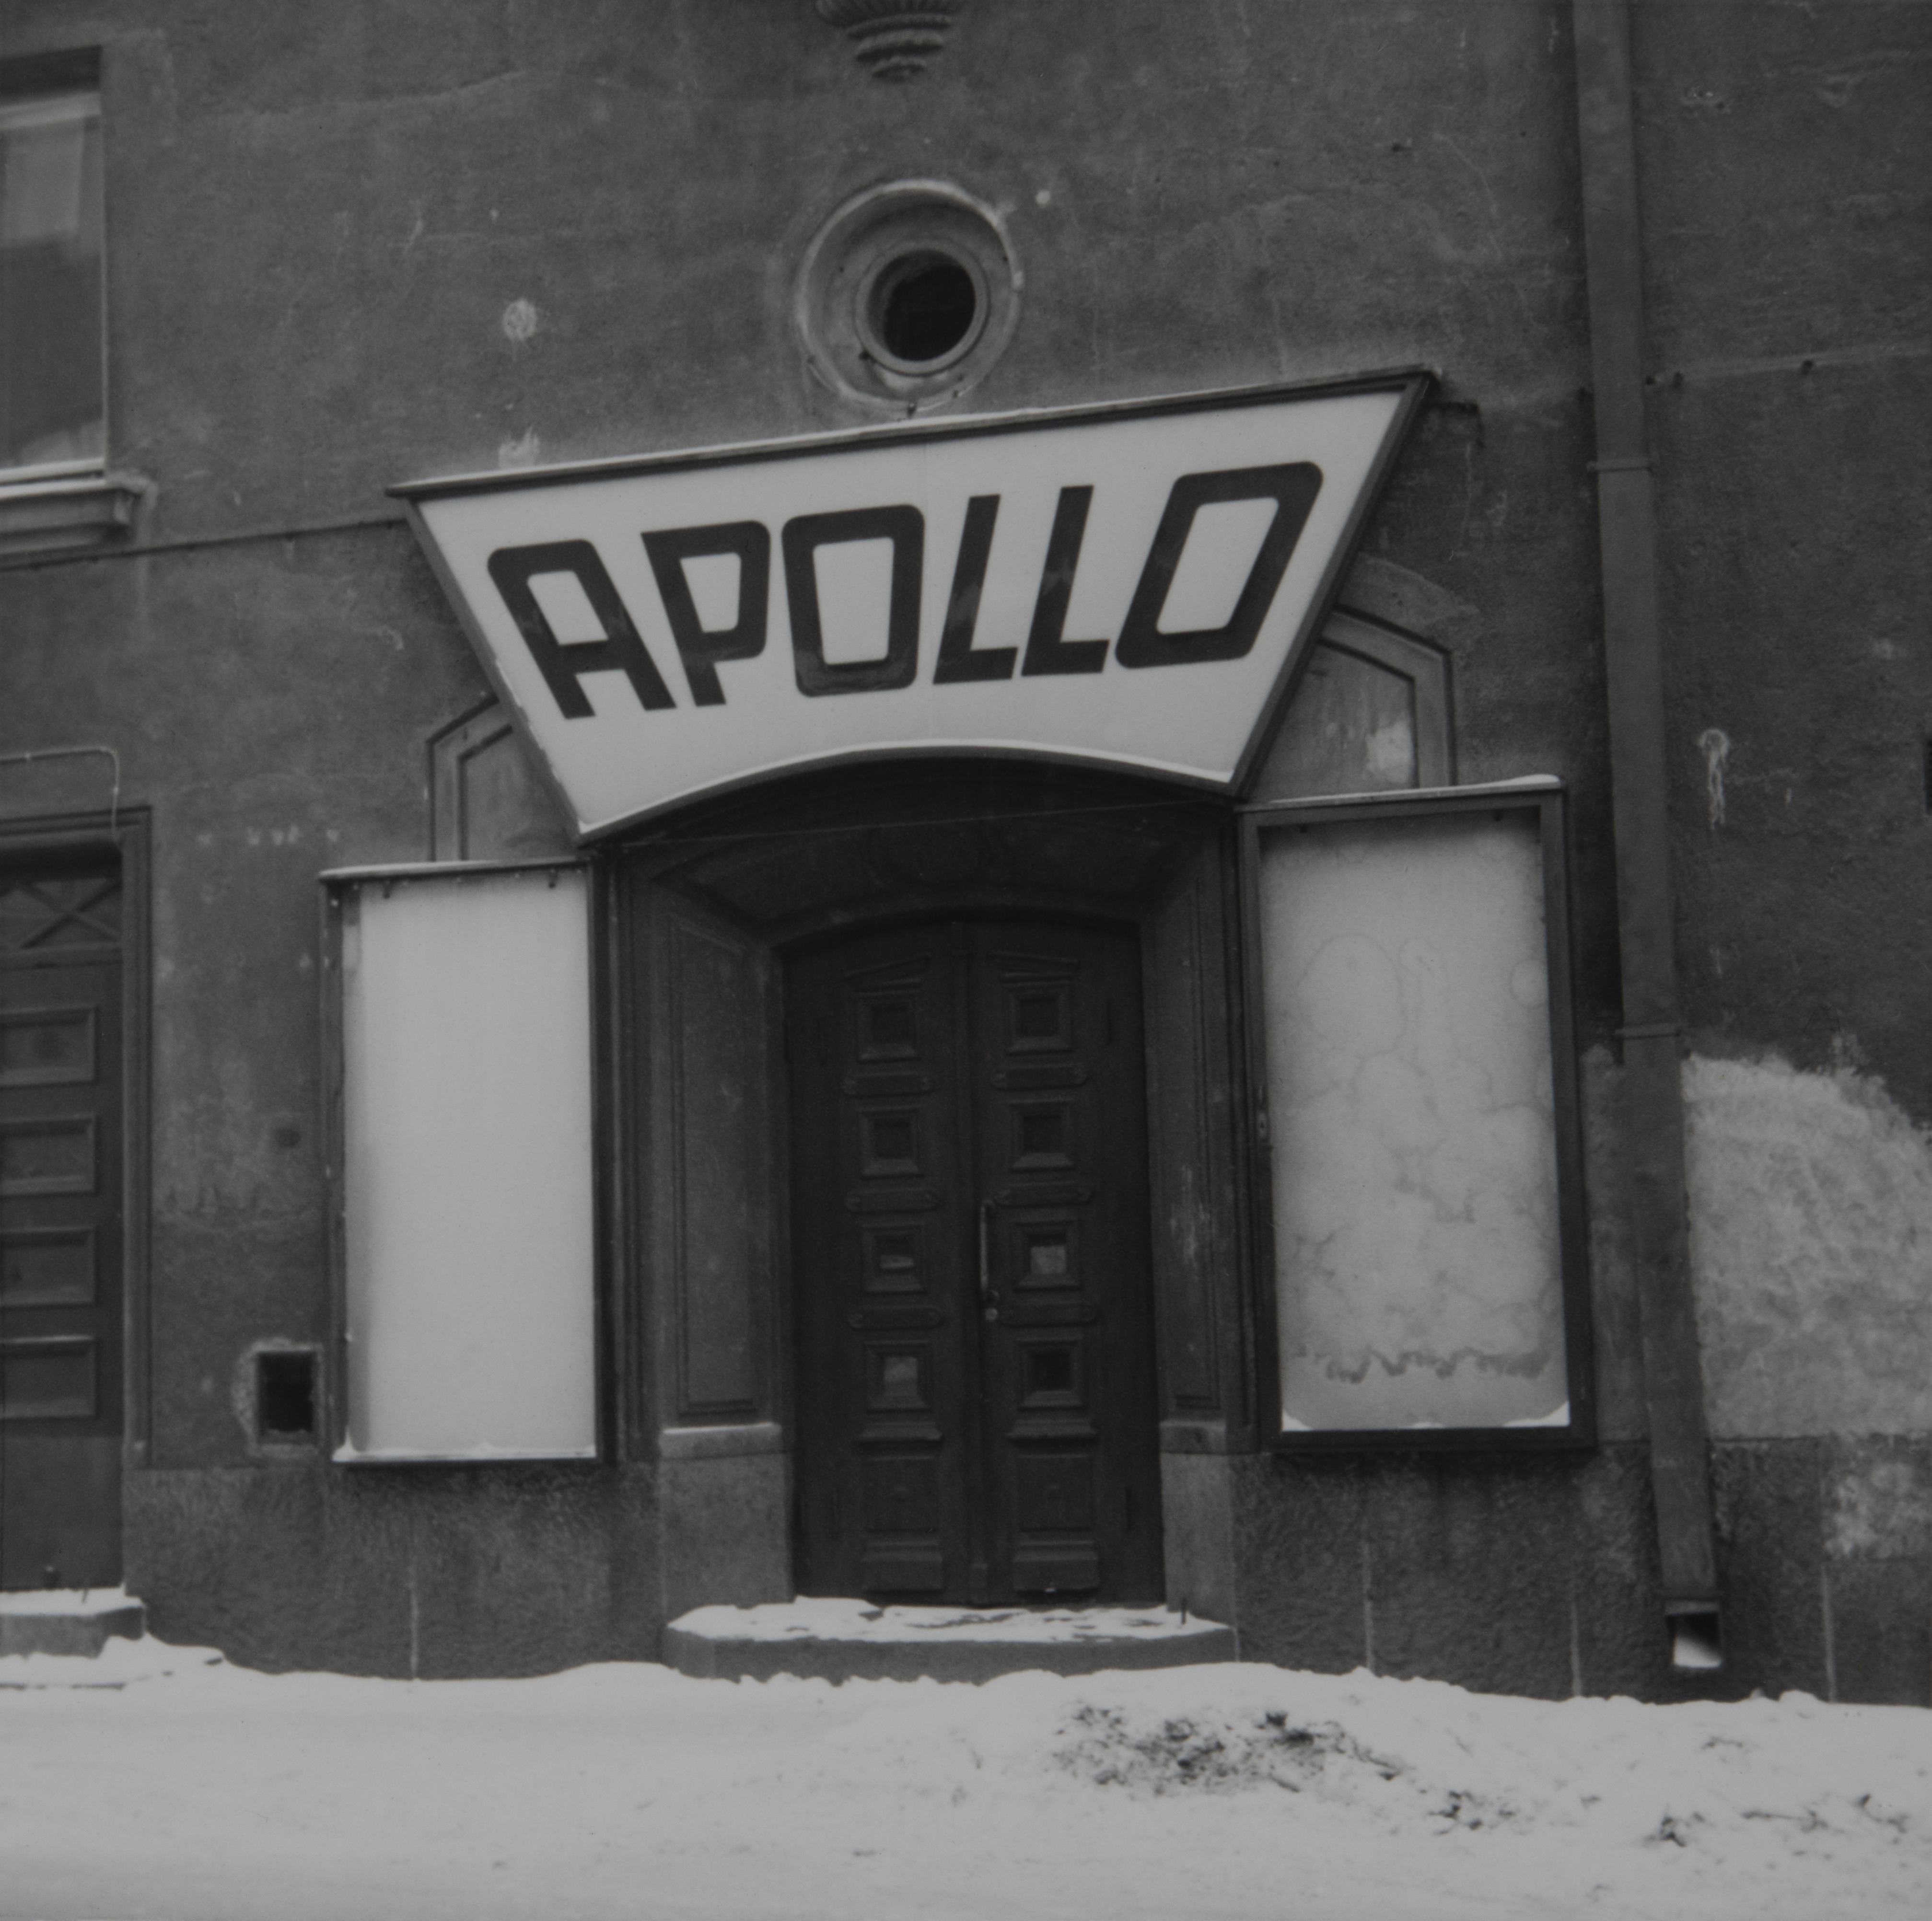 Näkymä elokuvateatteri Apollon sisäänkäynnistä ulkopuolelta, Hämeentie 78. Teatteri lopetti toimintansa joulukuussa 1965 ja vuonna 1966 se purettiin. Sisäänkäynnin molemmin puolin ovat mainoksia varten vitriinit, ja sisäänkäynnin yläpuolella teatterin nimen kertova valomainos.